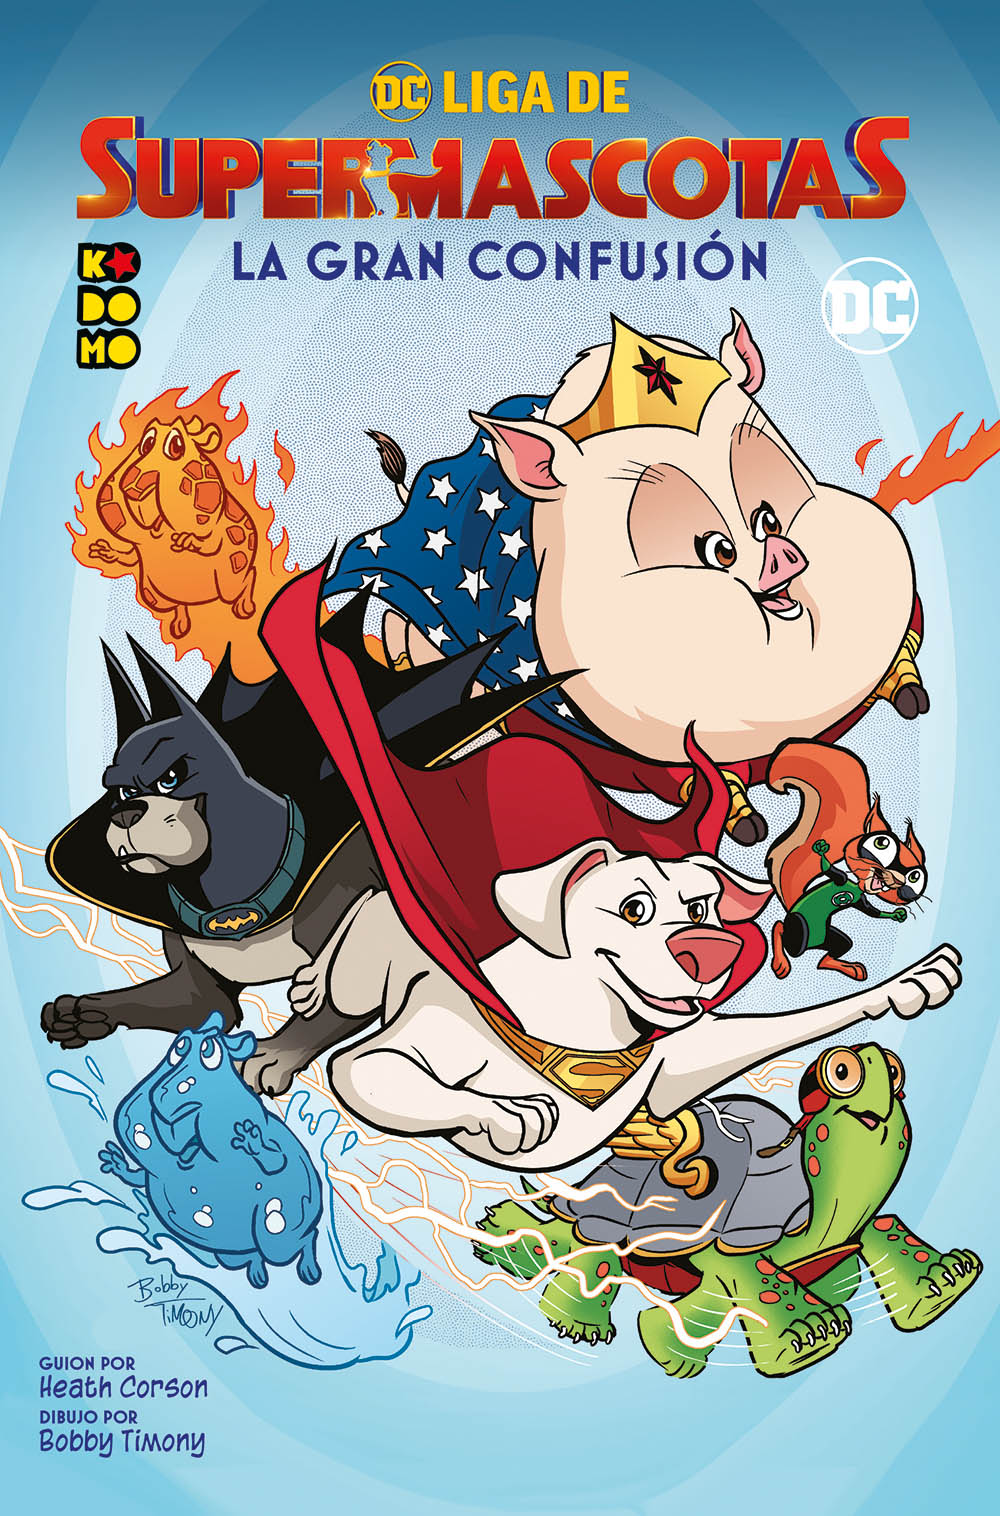 DC Liga de Supermascotas: La gran confusión - ECC Cómics